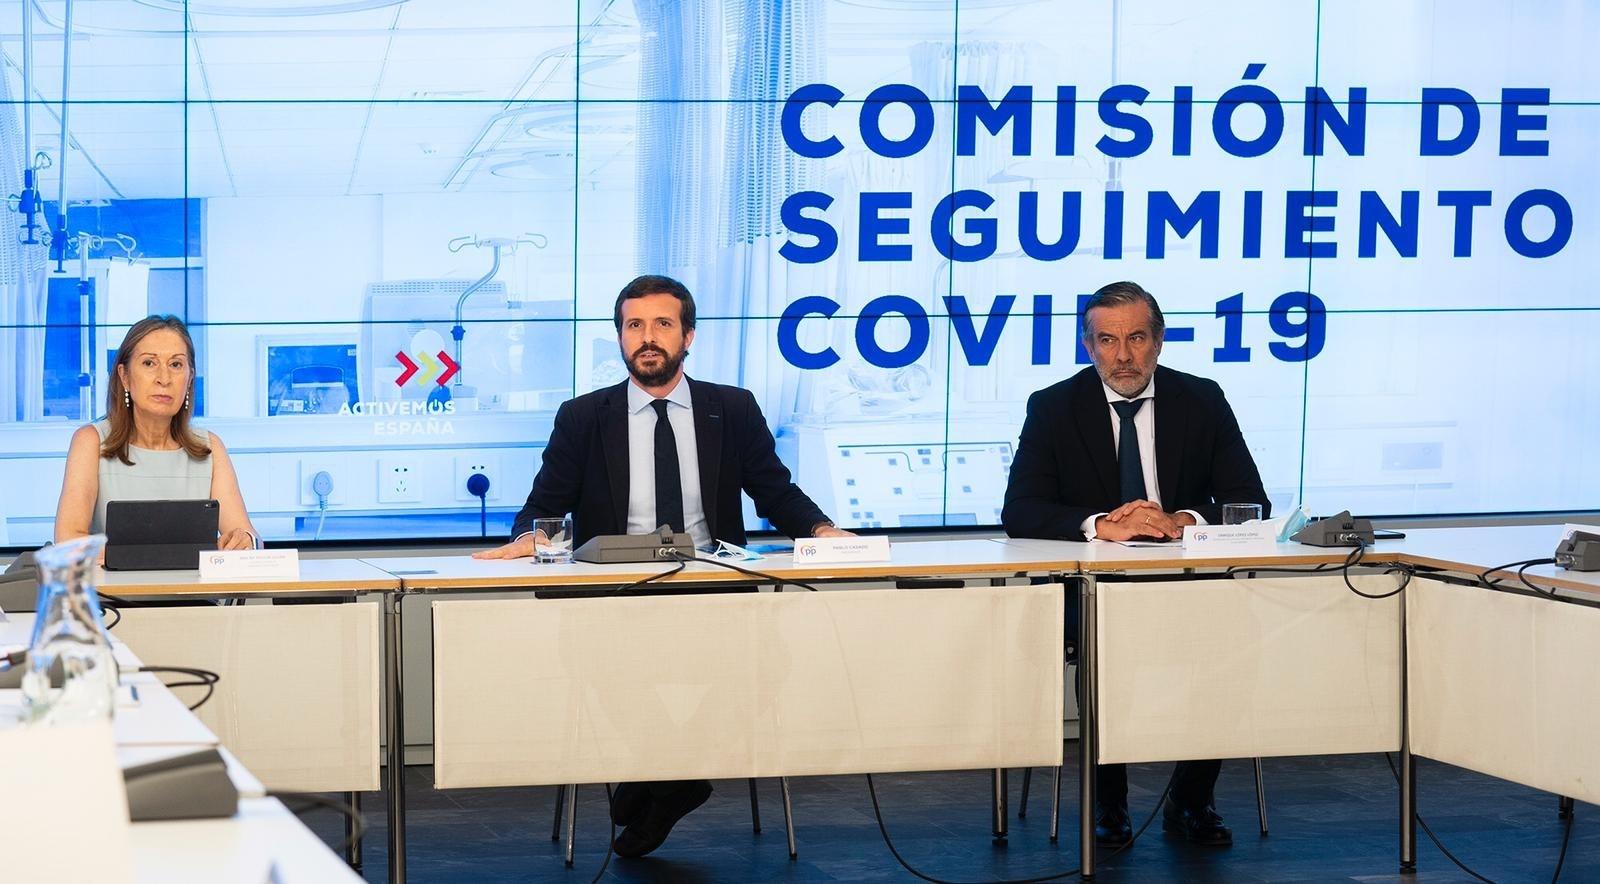 l líder del PP, Pablo Casado, preside la Comisión de Seguimiento del Covid-19 del PP con cargos de su partido